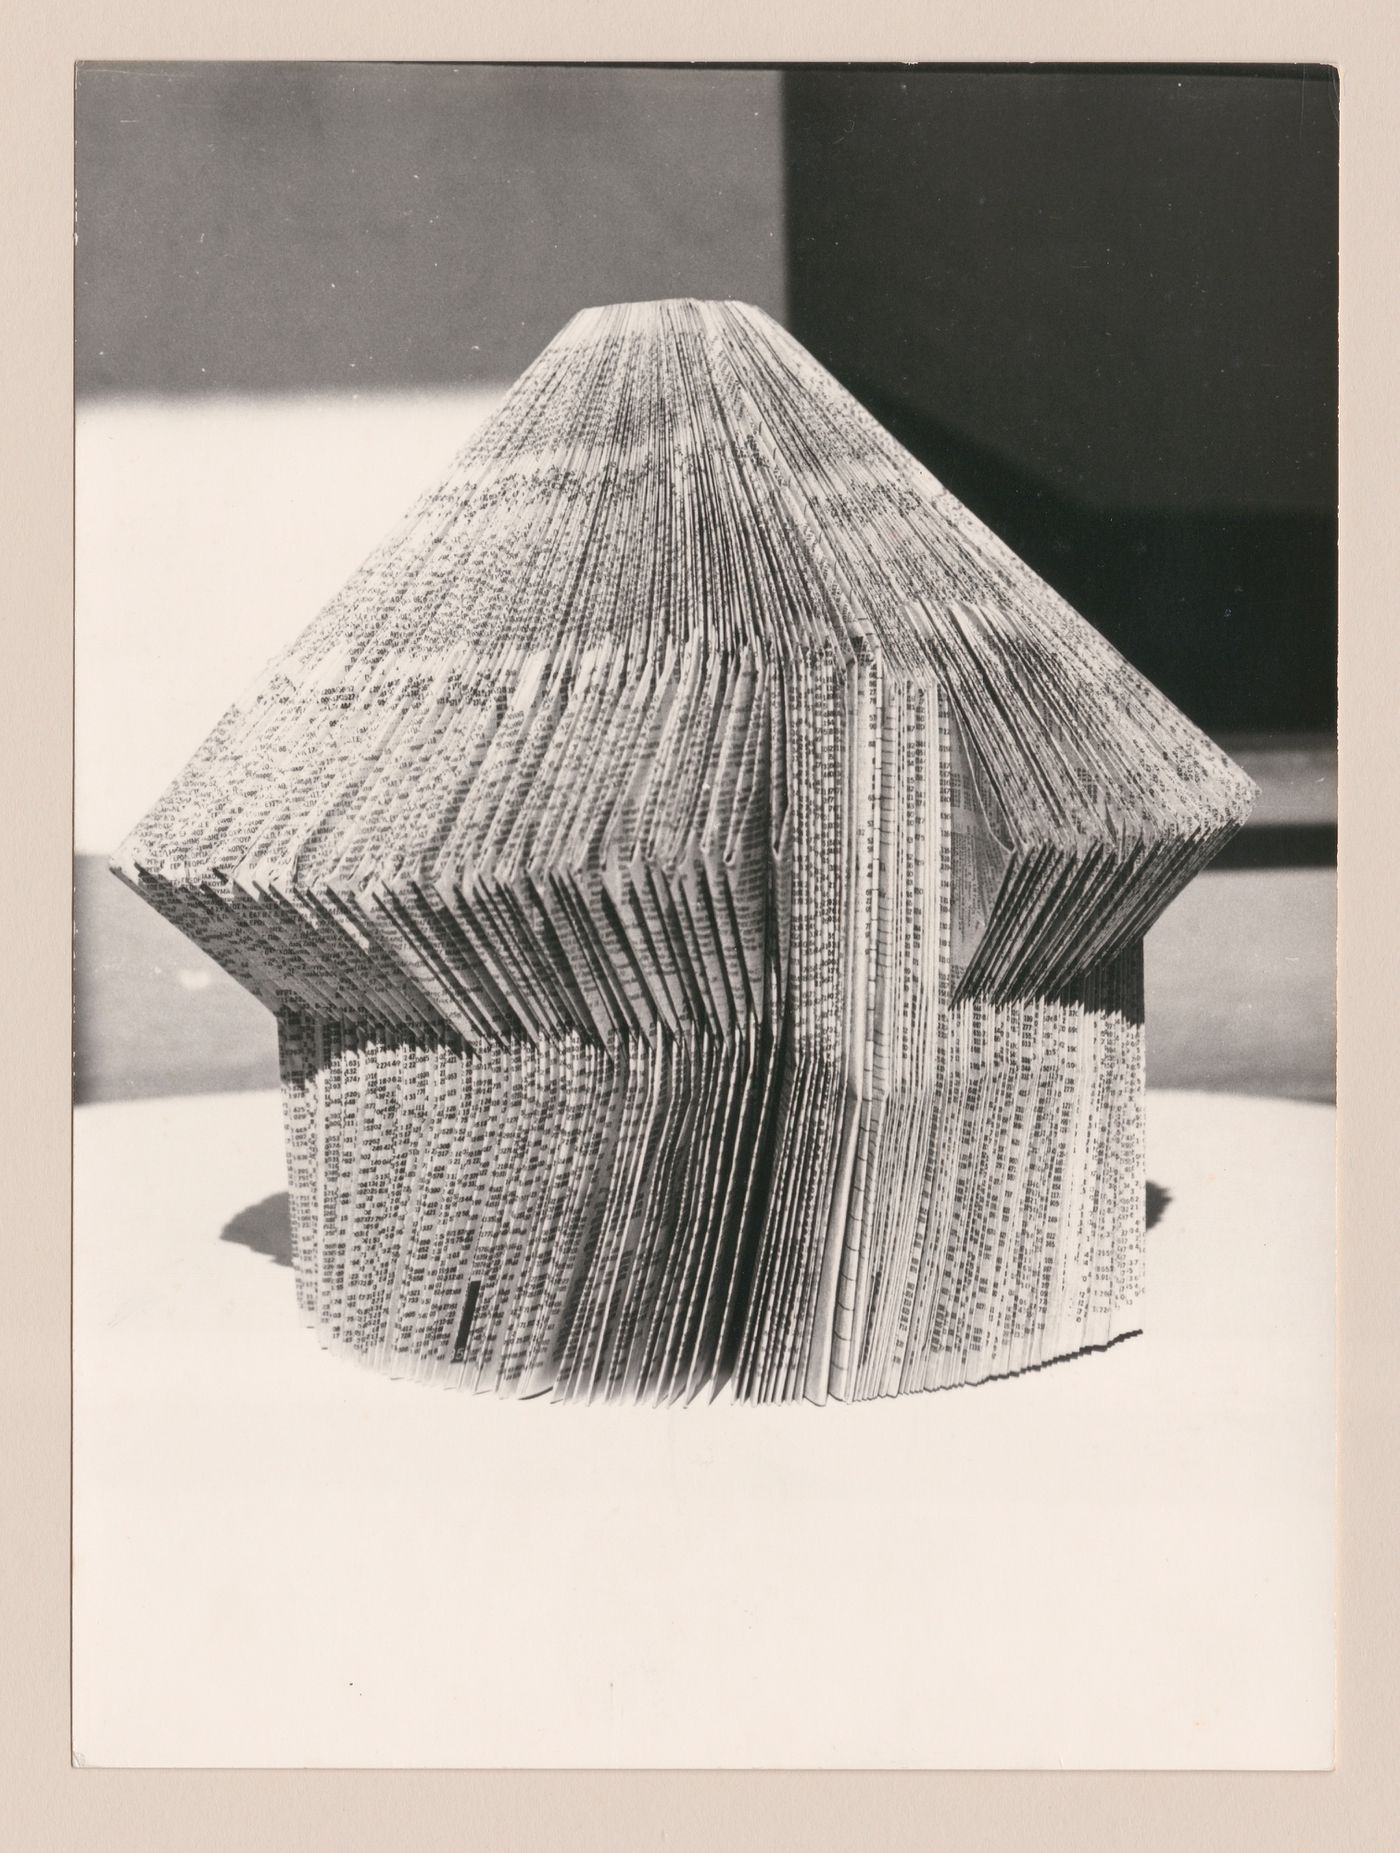 View of paper model for Architecttura di carta [Paper architecture]